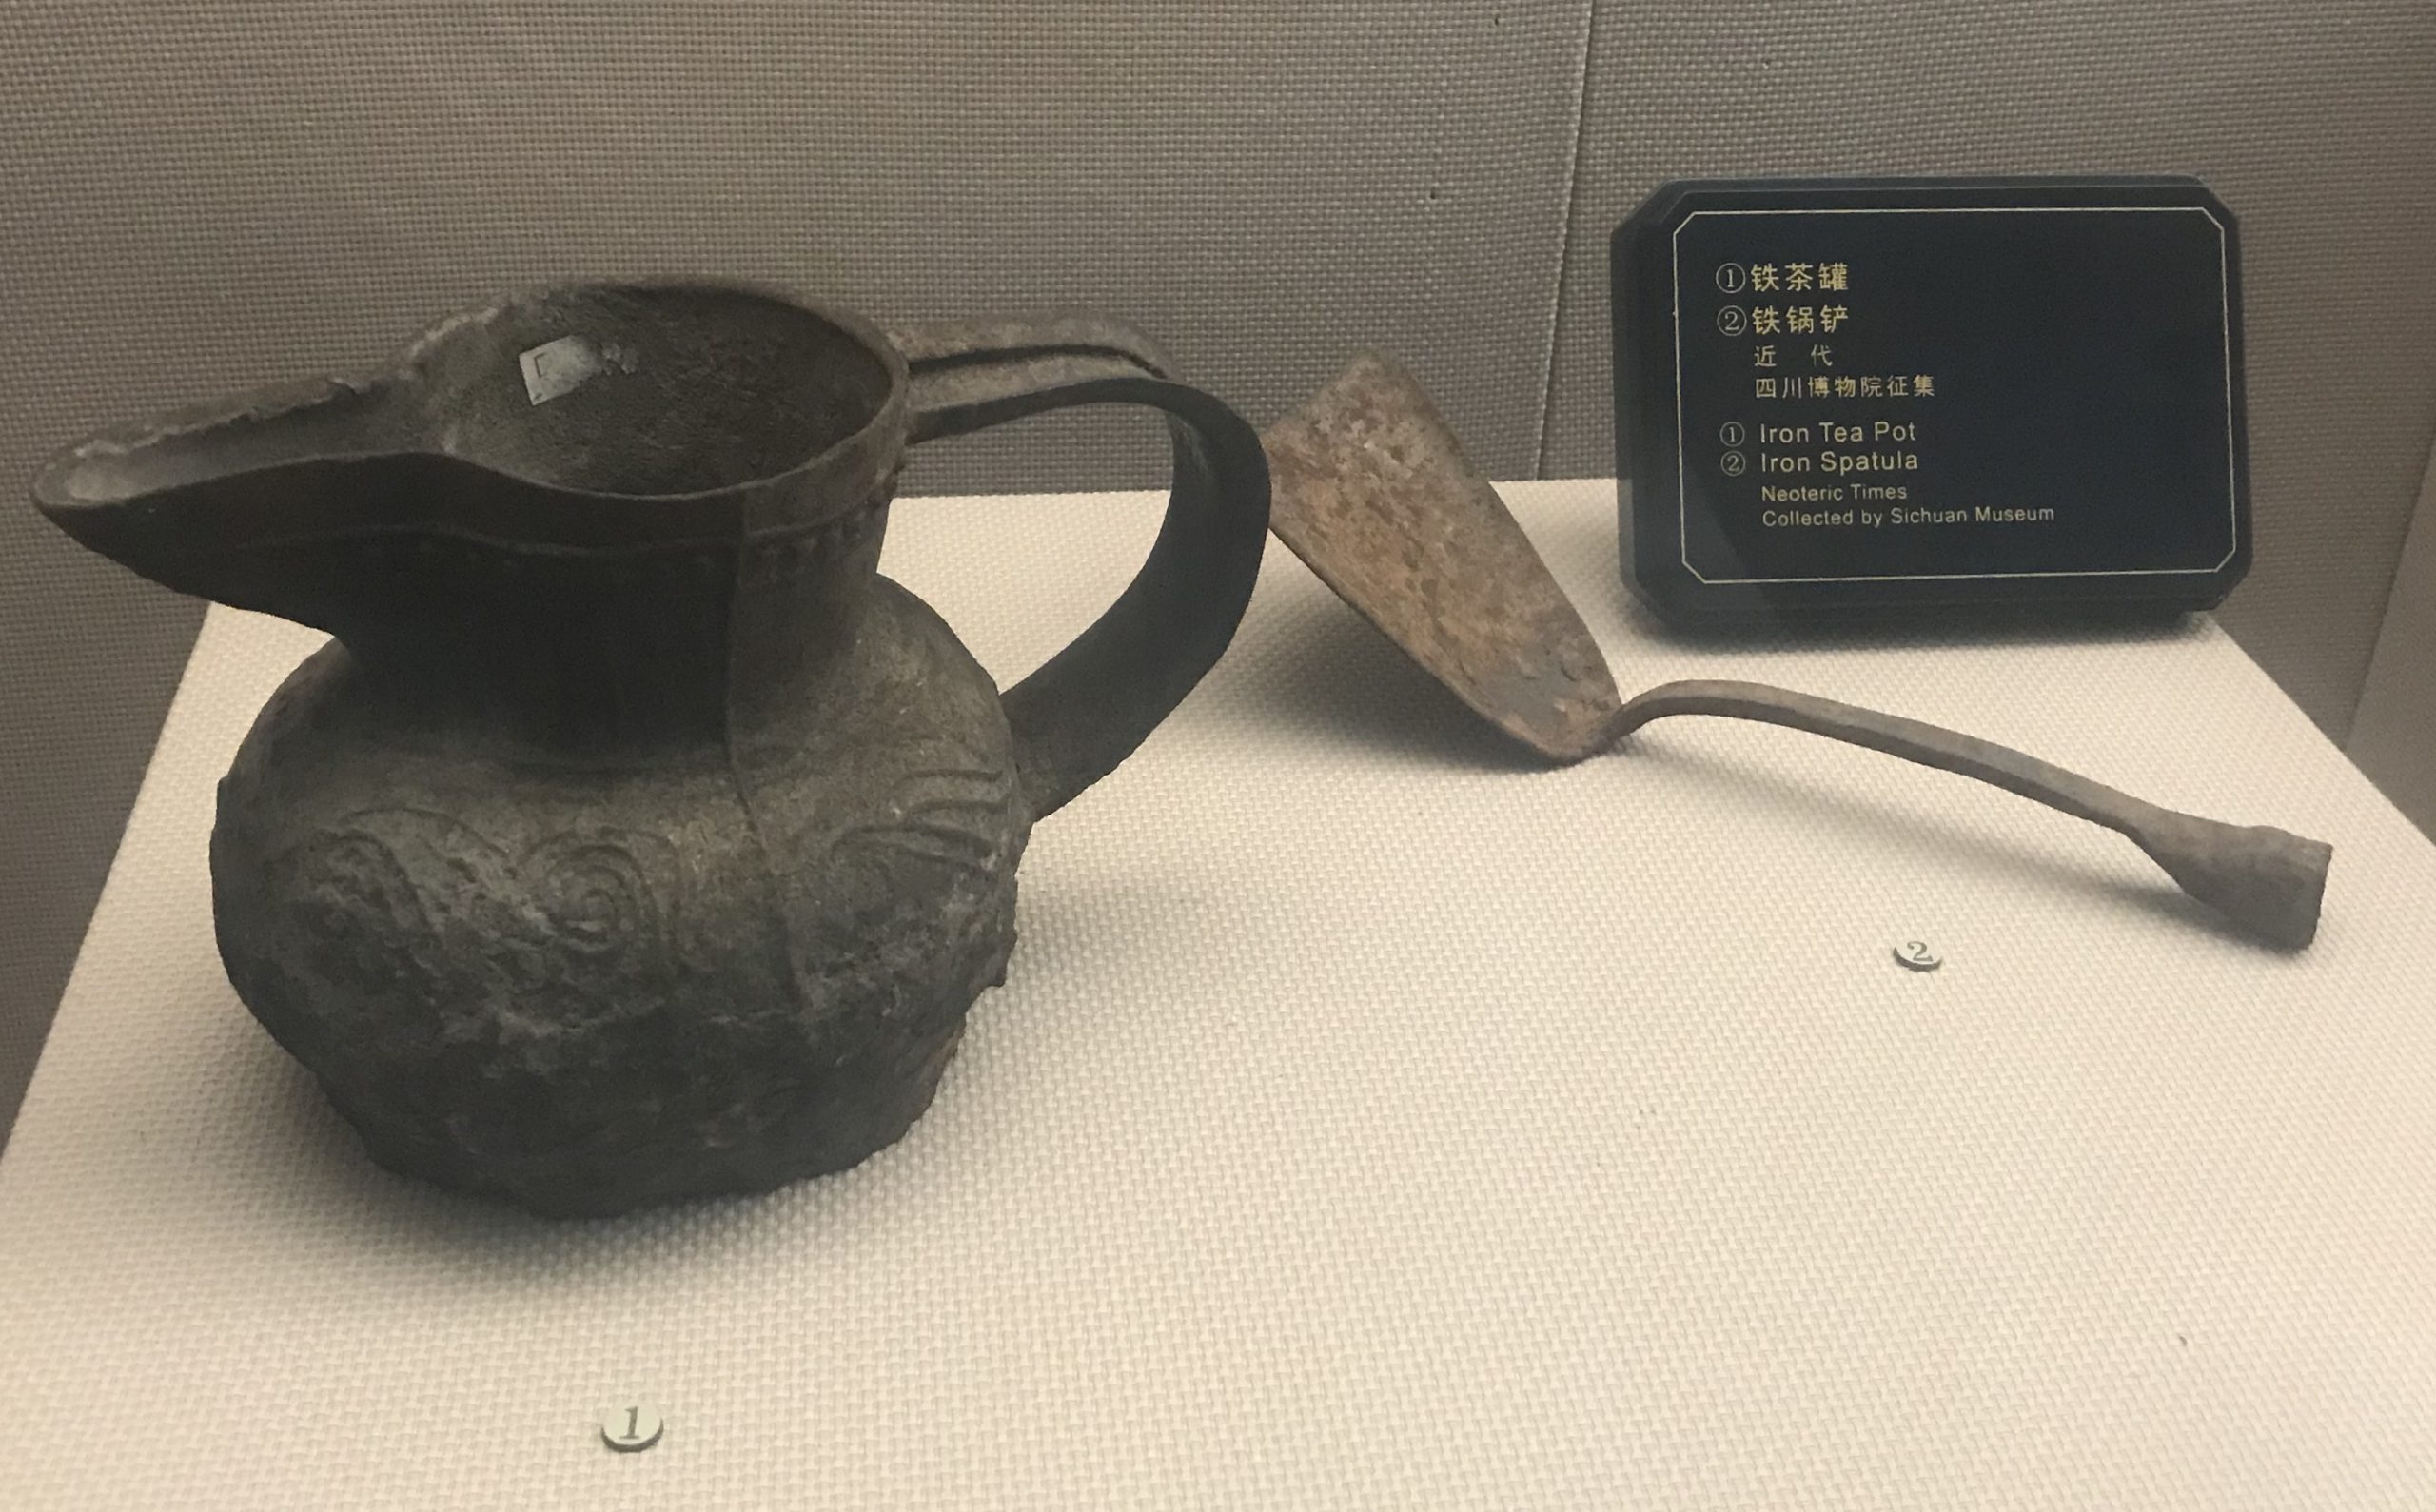 鉄鍋鏟-鉄茶罐-チャン族生活用品-四川民族文物館-四川博物館-成都